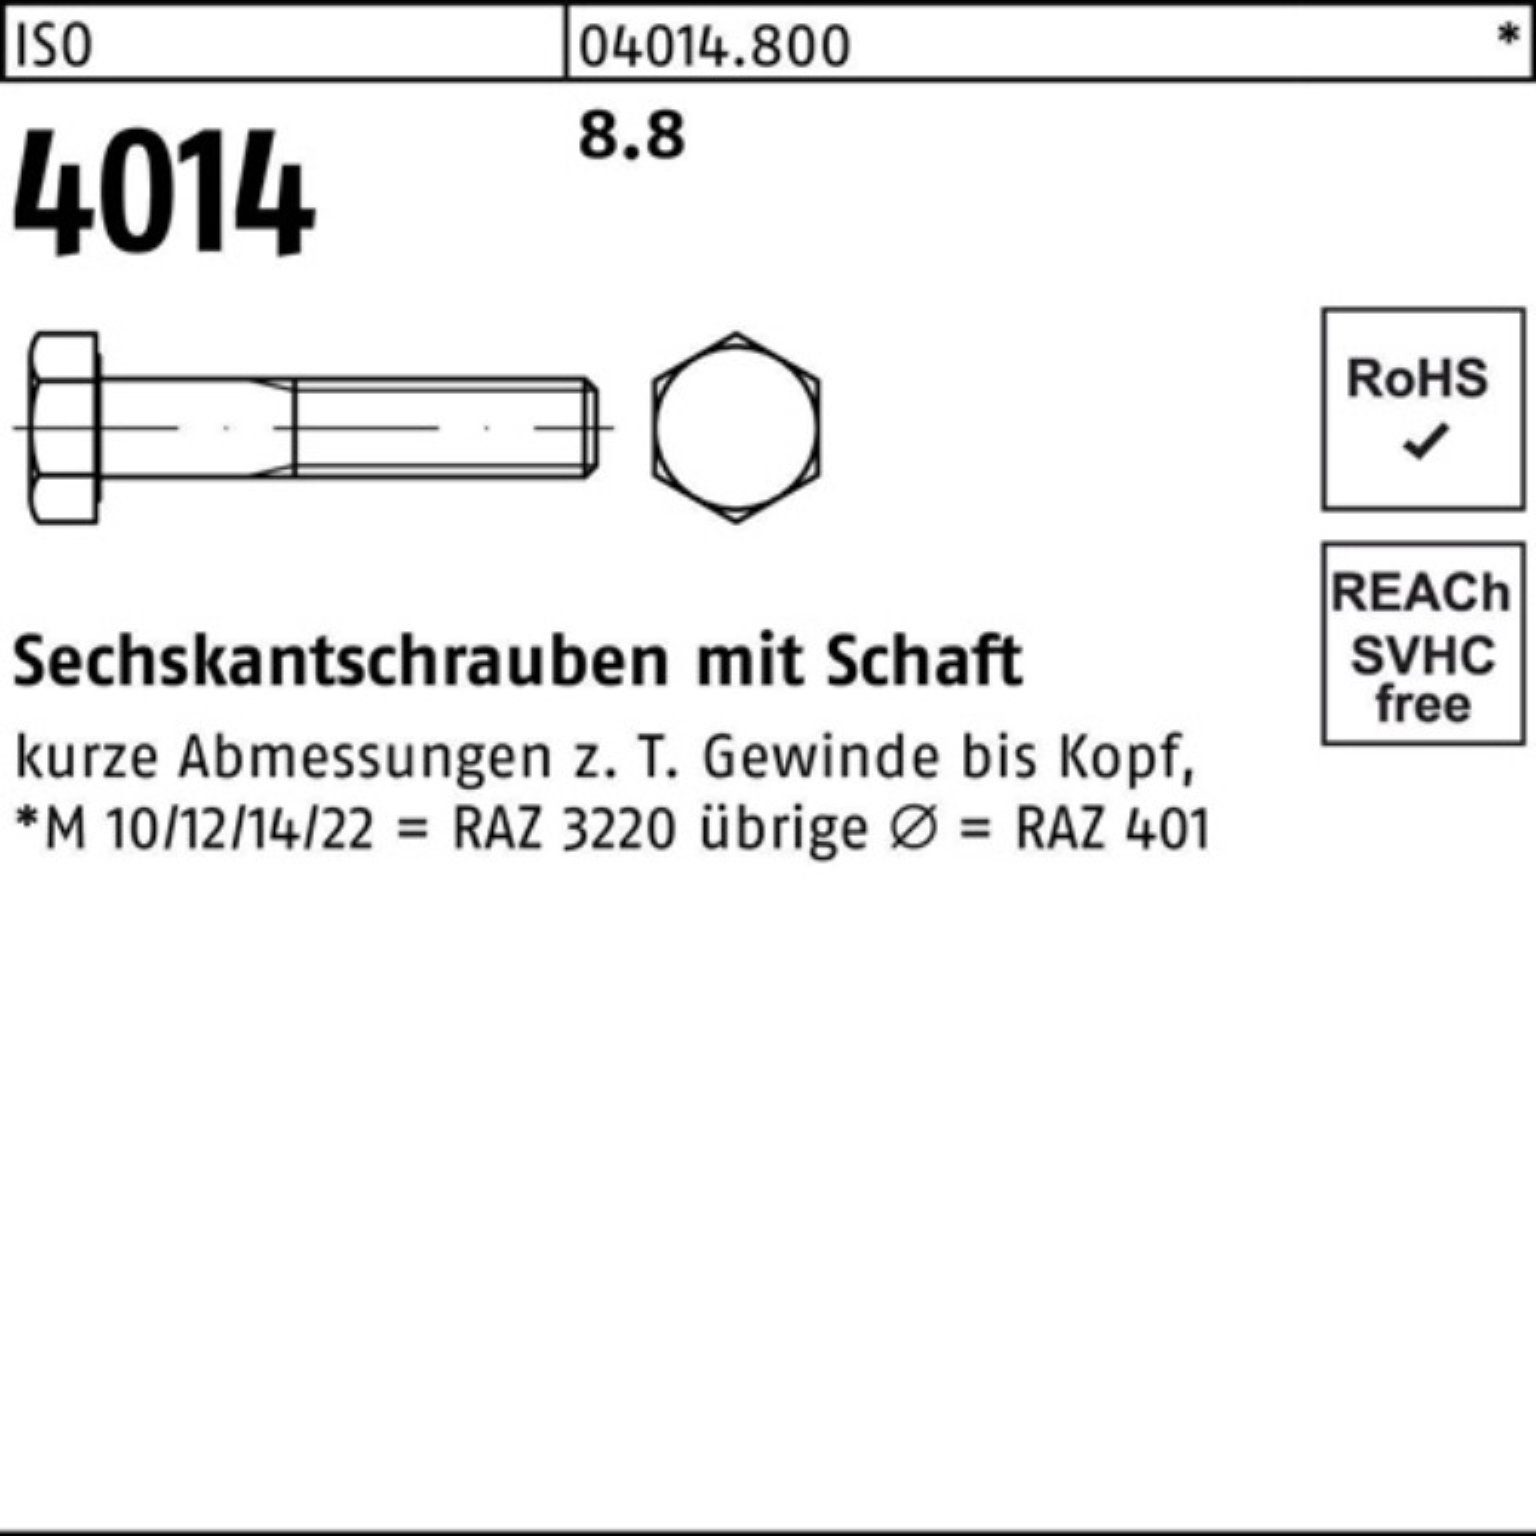 ISO 100er Bufab 240 Schaft Sechskantschraube Stück 8.8 Pack 1 Sechskantschraube 4014 ISO M30x